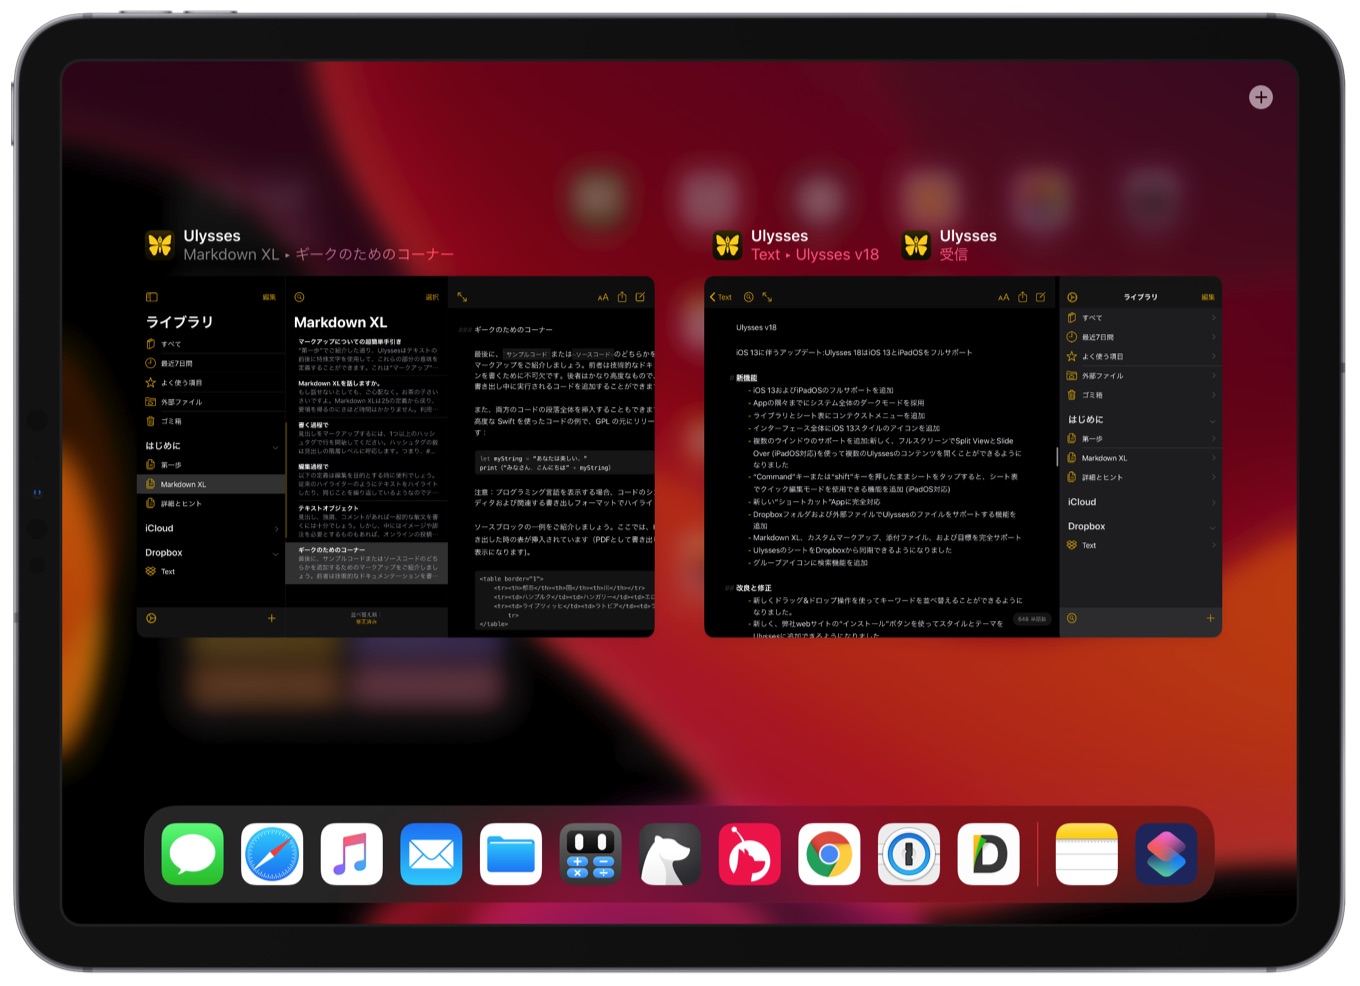 Ulysses v18 for iPadOS support multi tasking